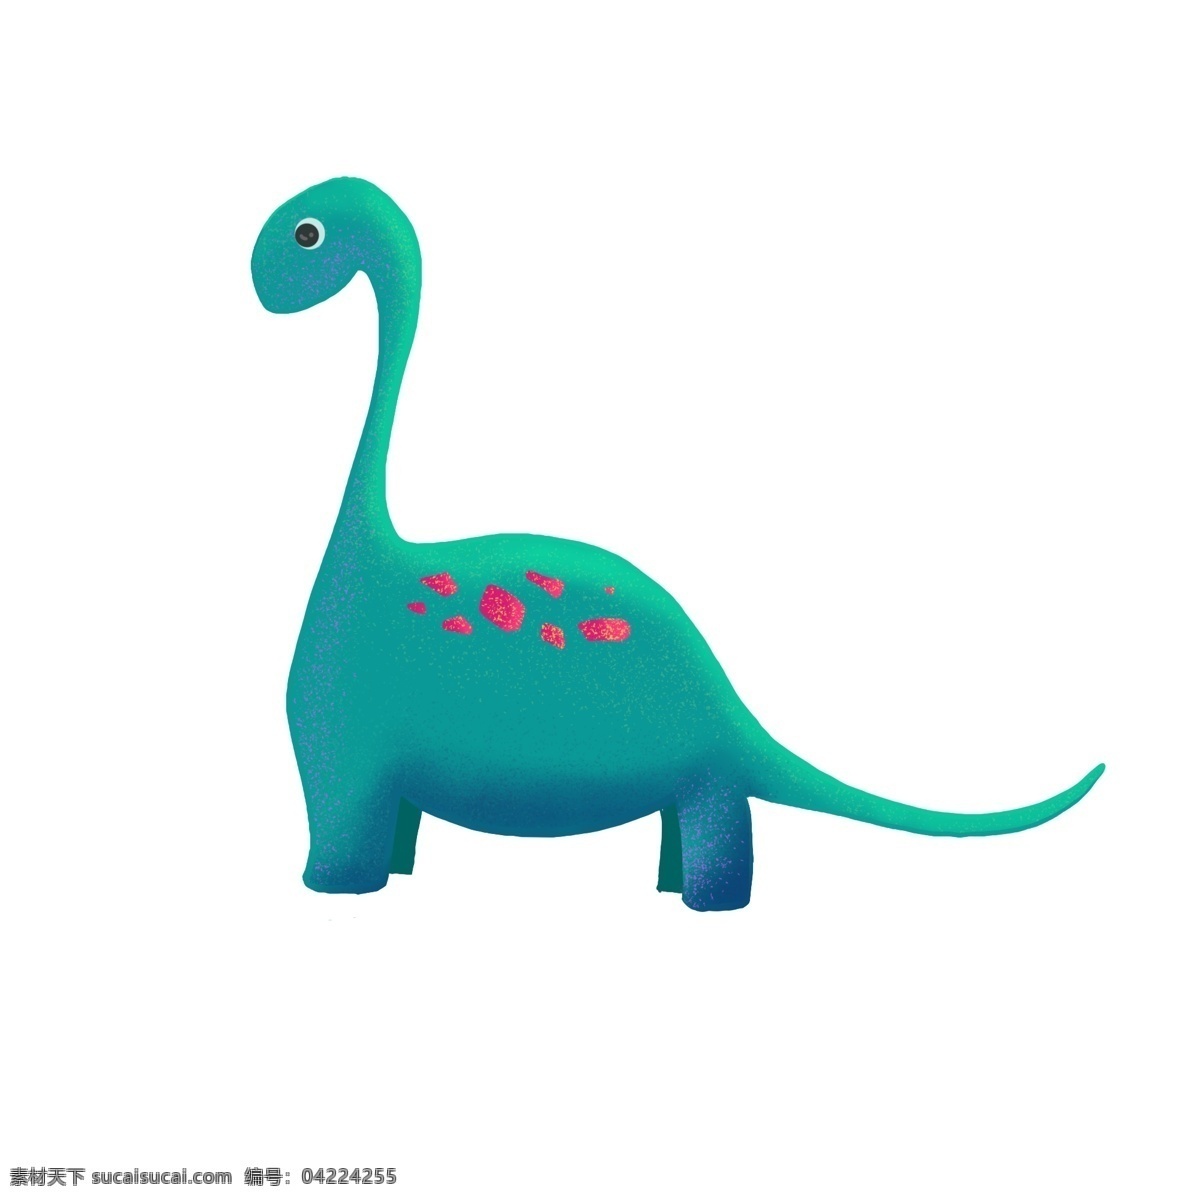 可爱 绿色 小 恐龙 插画 绿色小恐龙 可爱的恐龙 动物 卡通恐龙插画 霸王龙 恐龙乐园